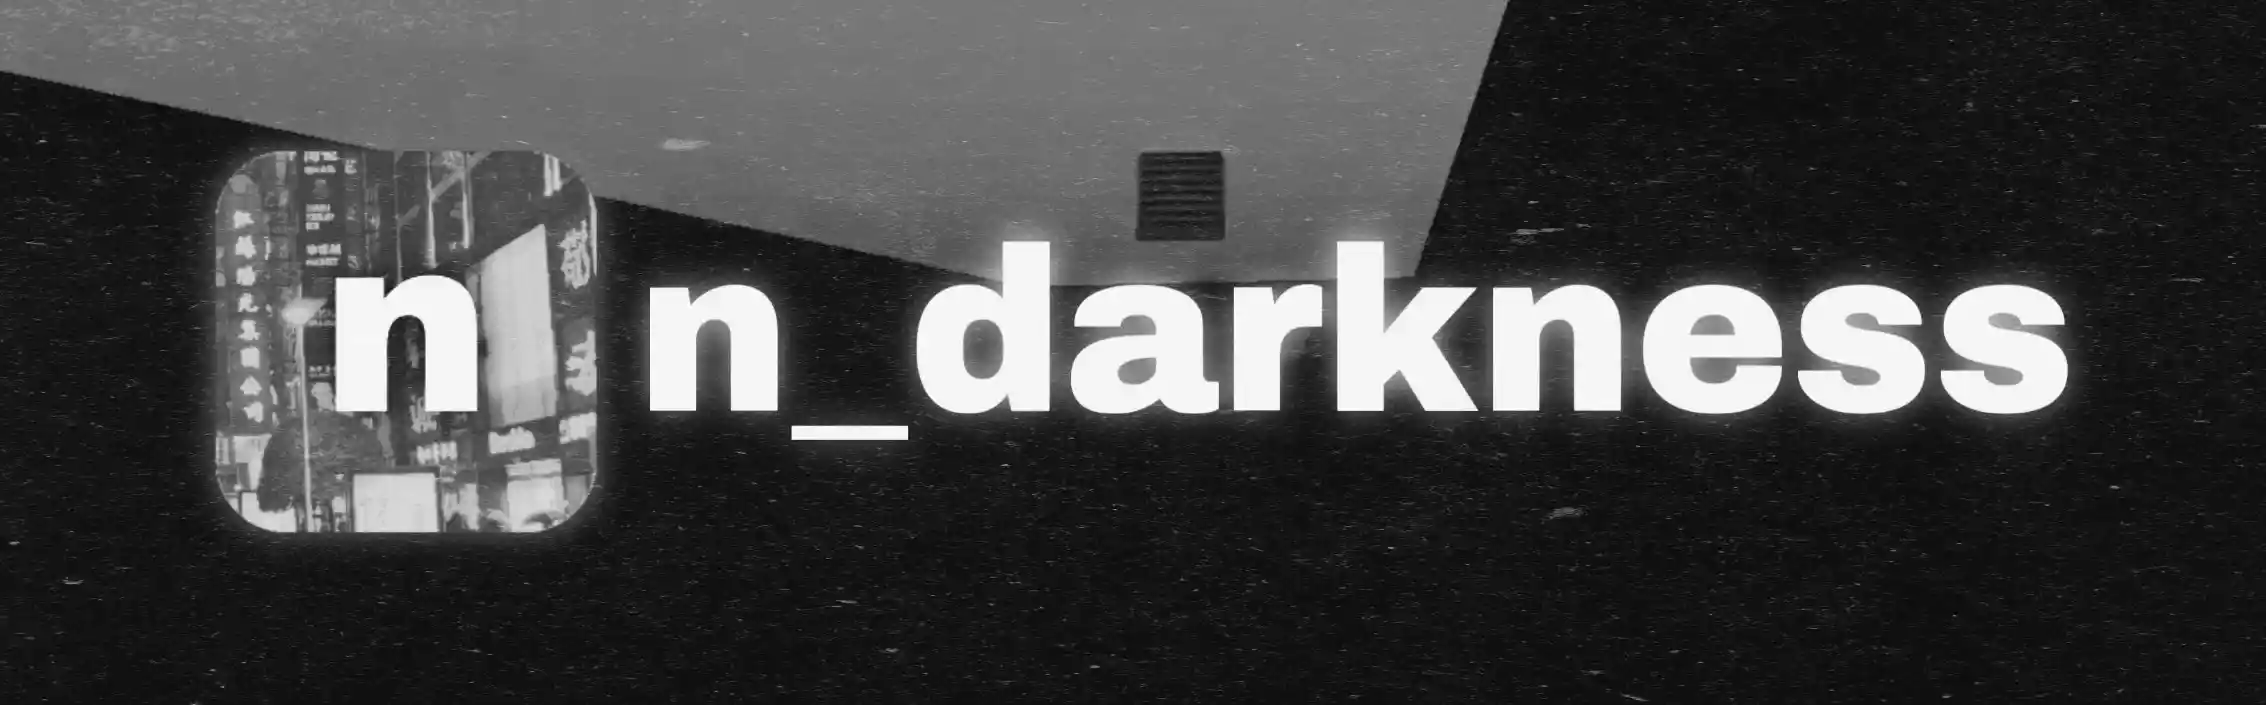 darkness.JPEG